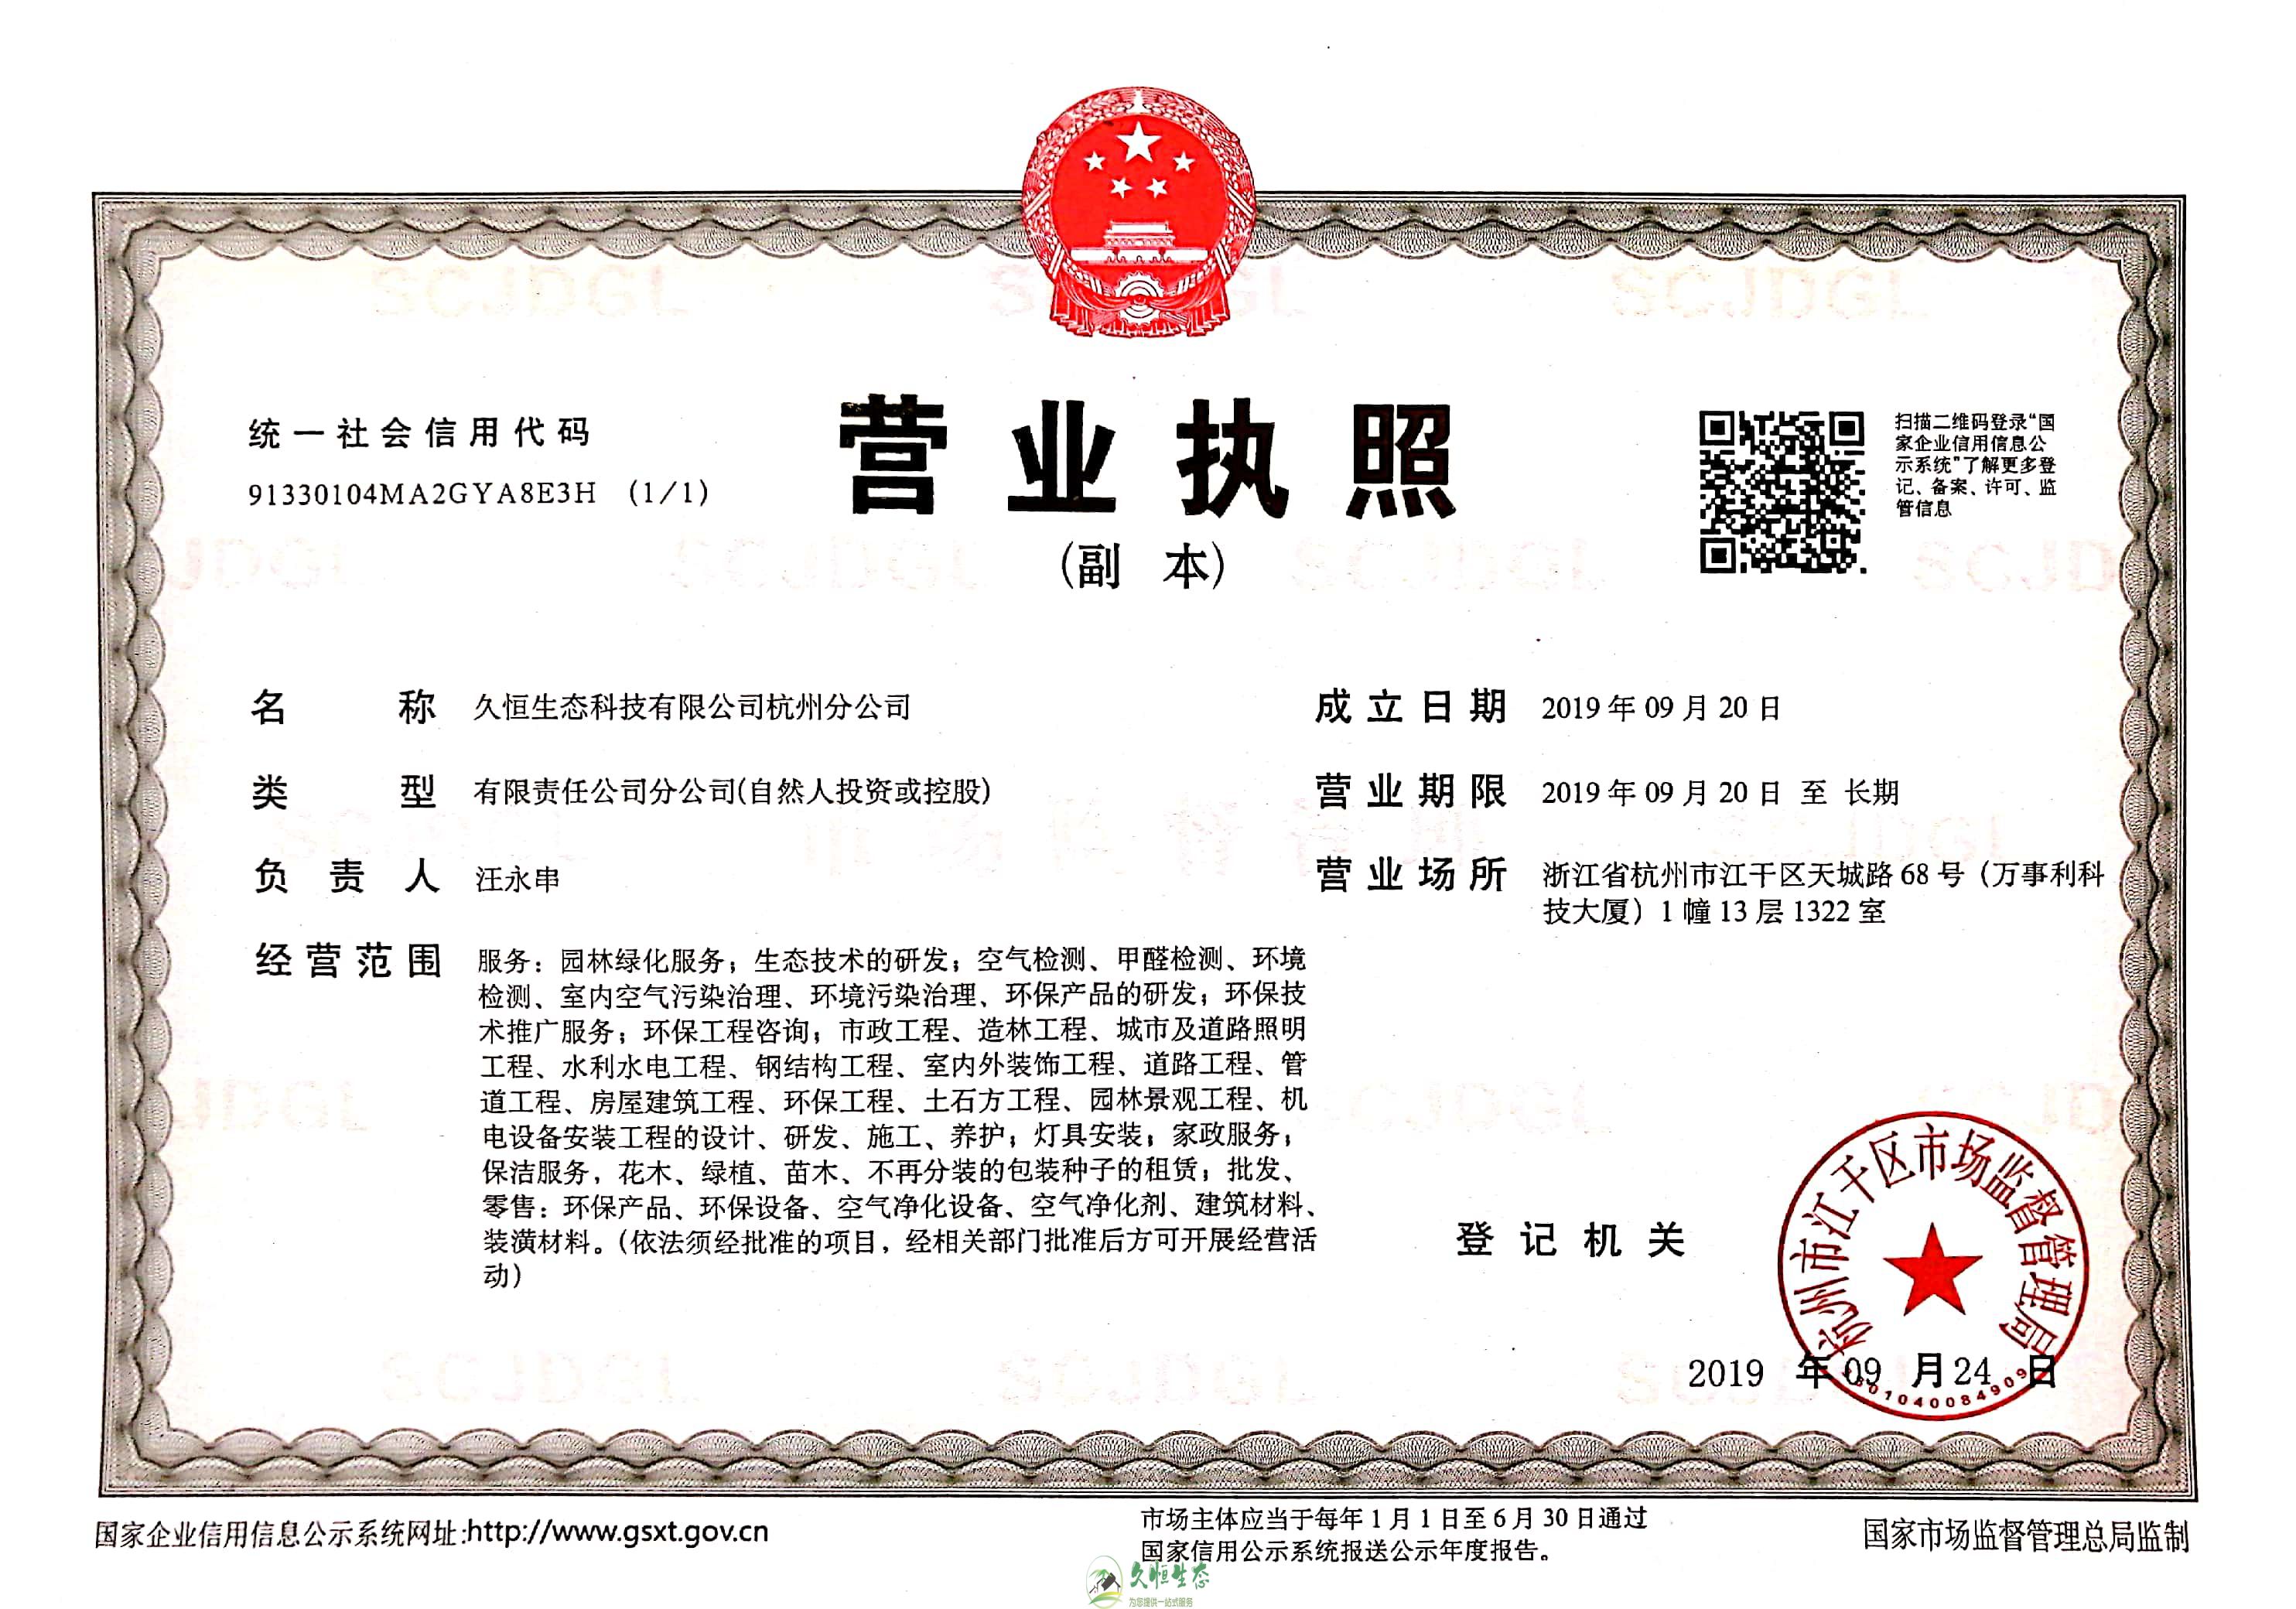 六合久恒生态杭州分公司营业执照